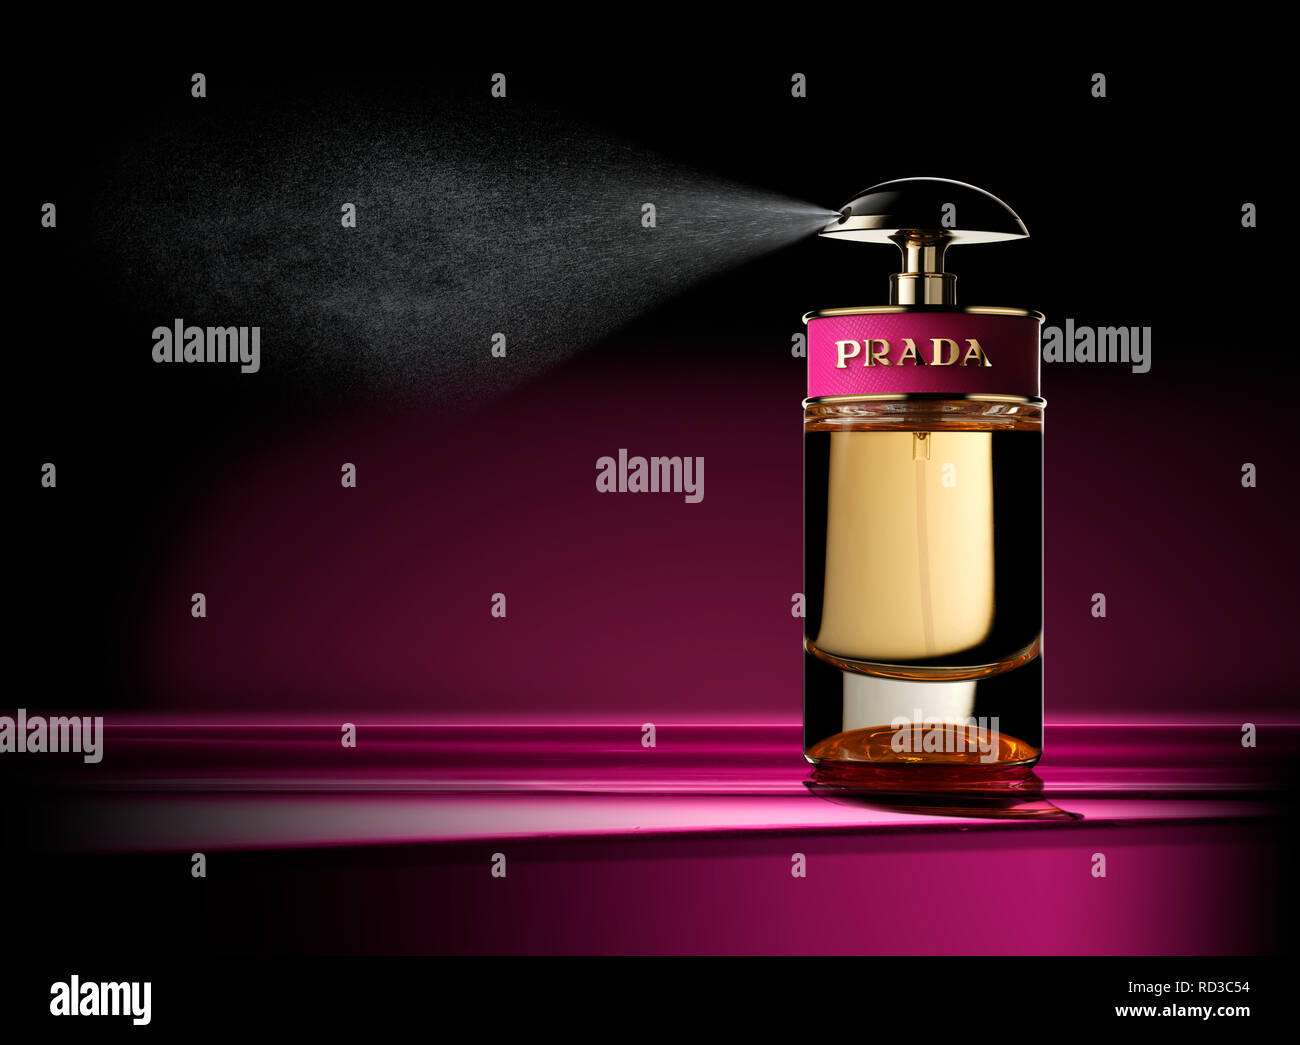 Prada frasco de perfume en spray, Foto de estudio Foto de stock